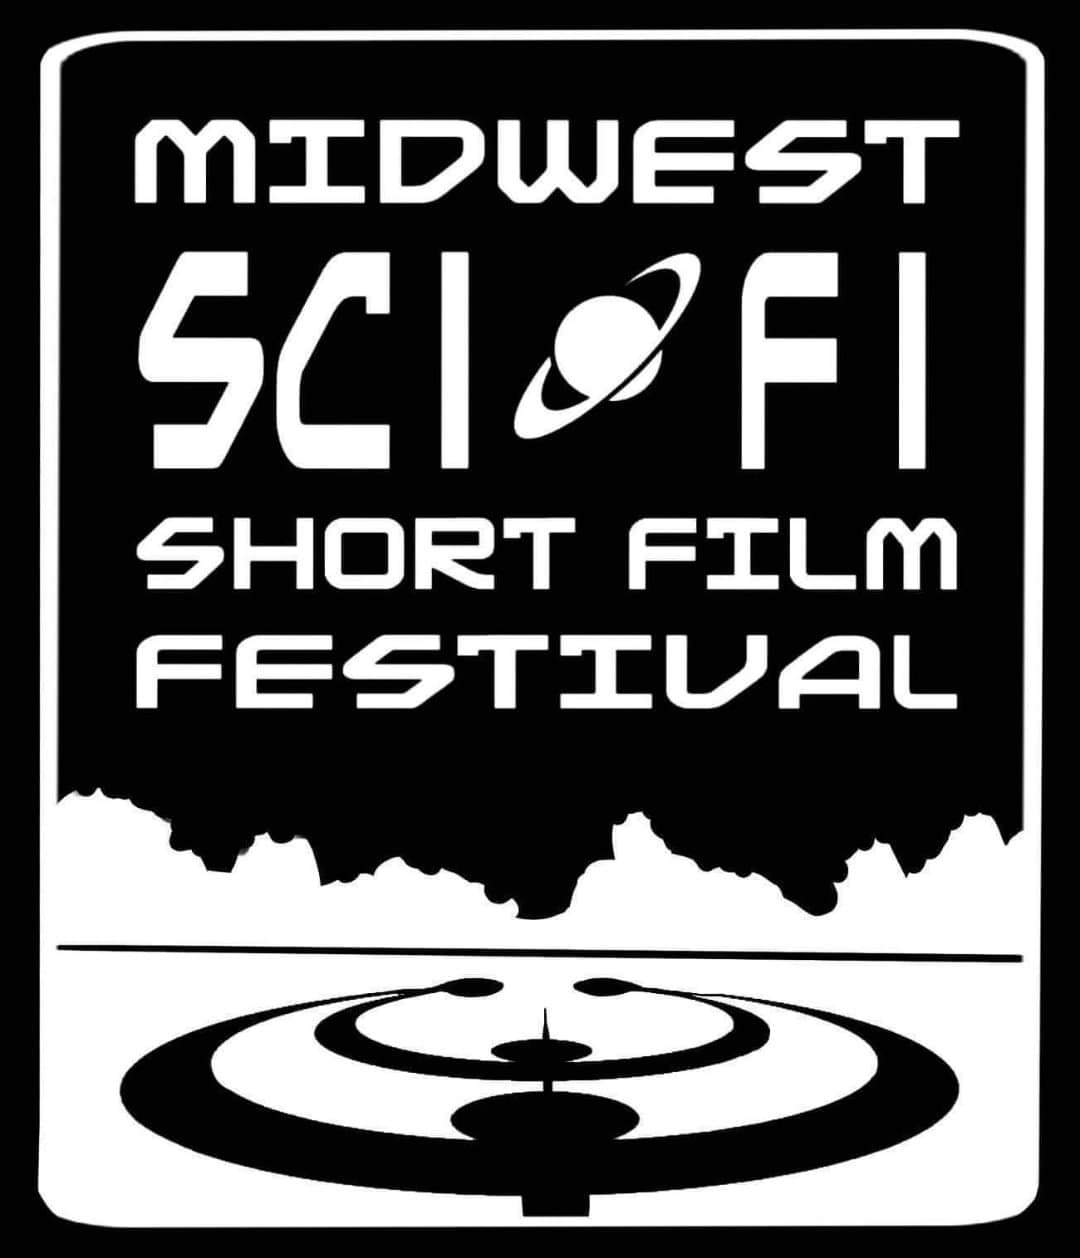 Midwest SciFi Short Film Festival